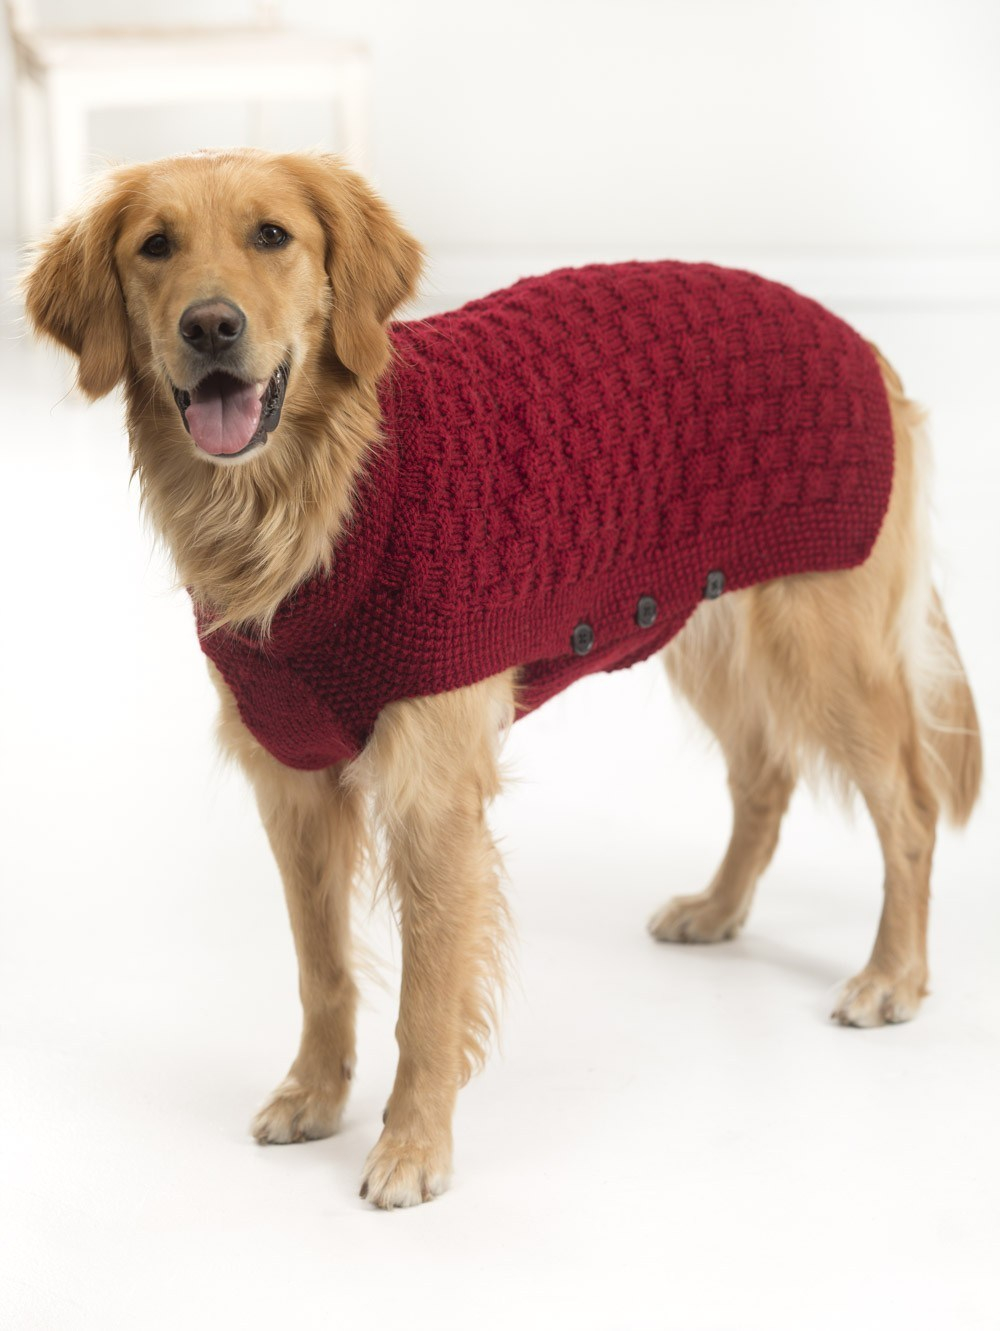 Dog Sweater Knitting Patterns 10 Stunning Examples Of Beautiful Fall Dog Sweaters Free Knitting